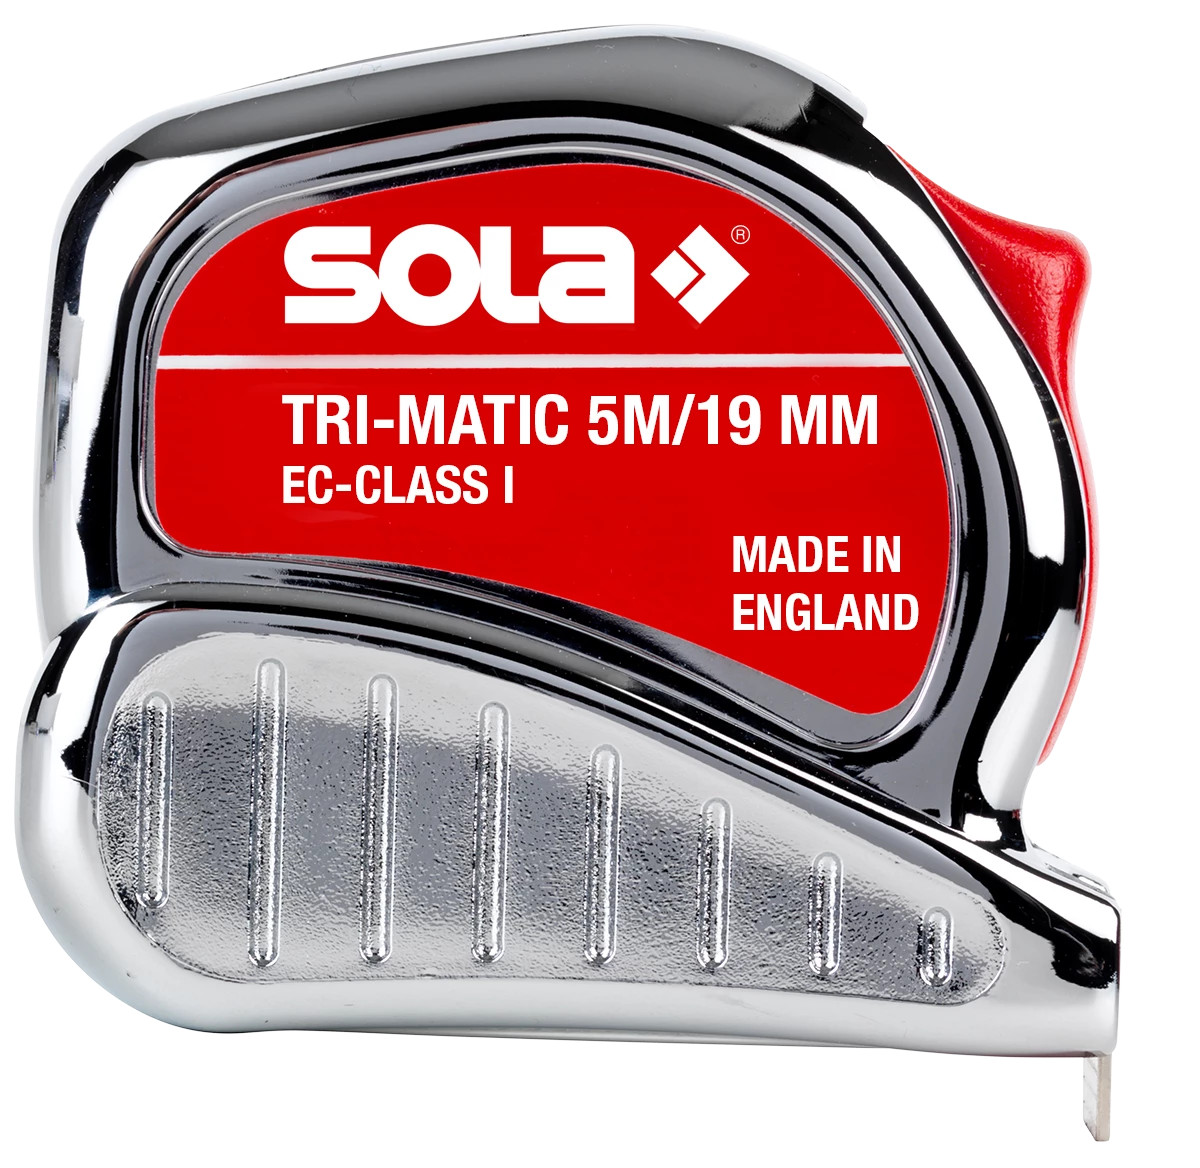 Ruletă Tri-Matic TM, 5m – Sola-50023301 criano.com imagine 2022